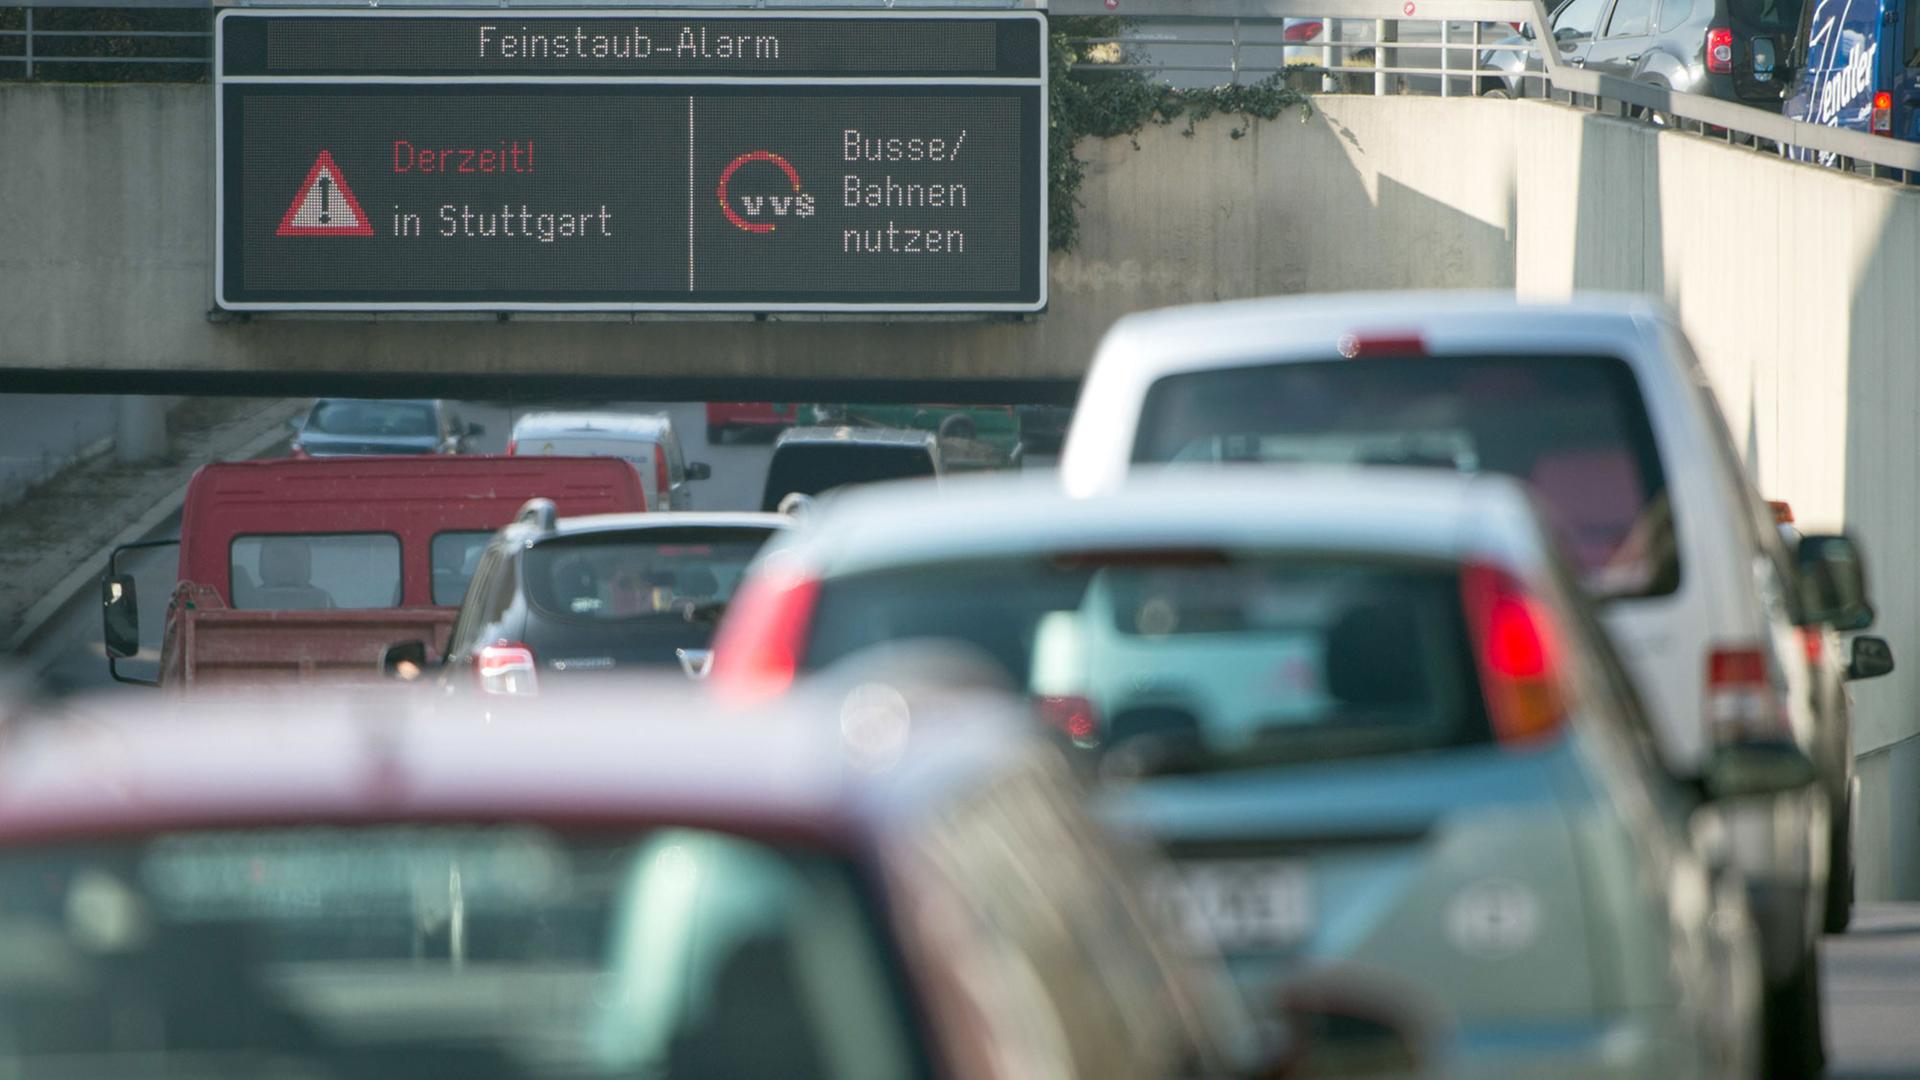 Autos fahren in Stuttgart durch die Innenstadt, während auf einer Anzeige ein Feinstaub-Alarm für die Umweltzone Stuttgart angezeigt und auf öffentliche Verkehrsmittel hingewiesen wird.